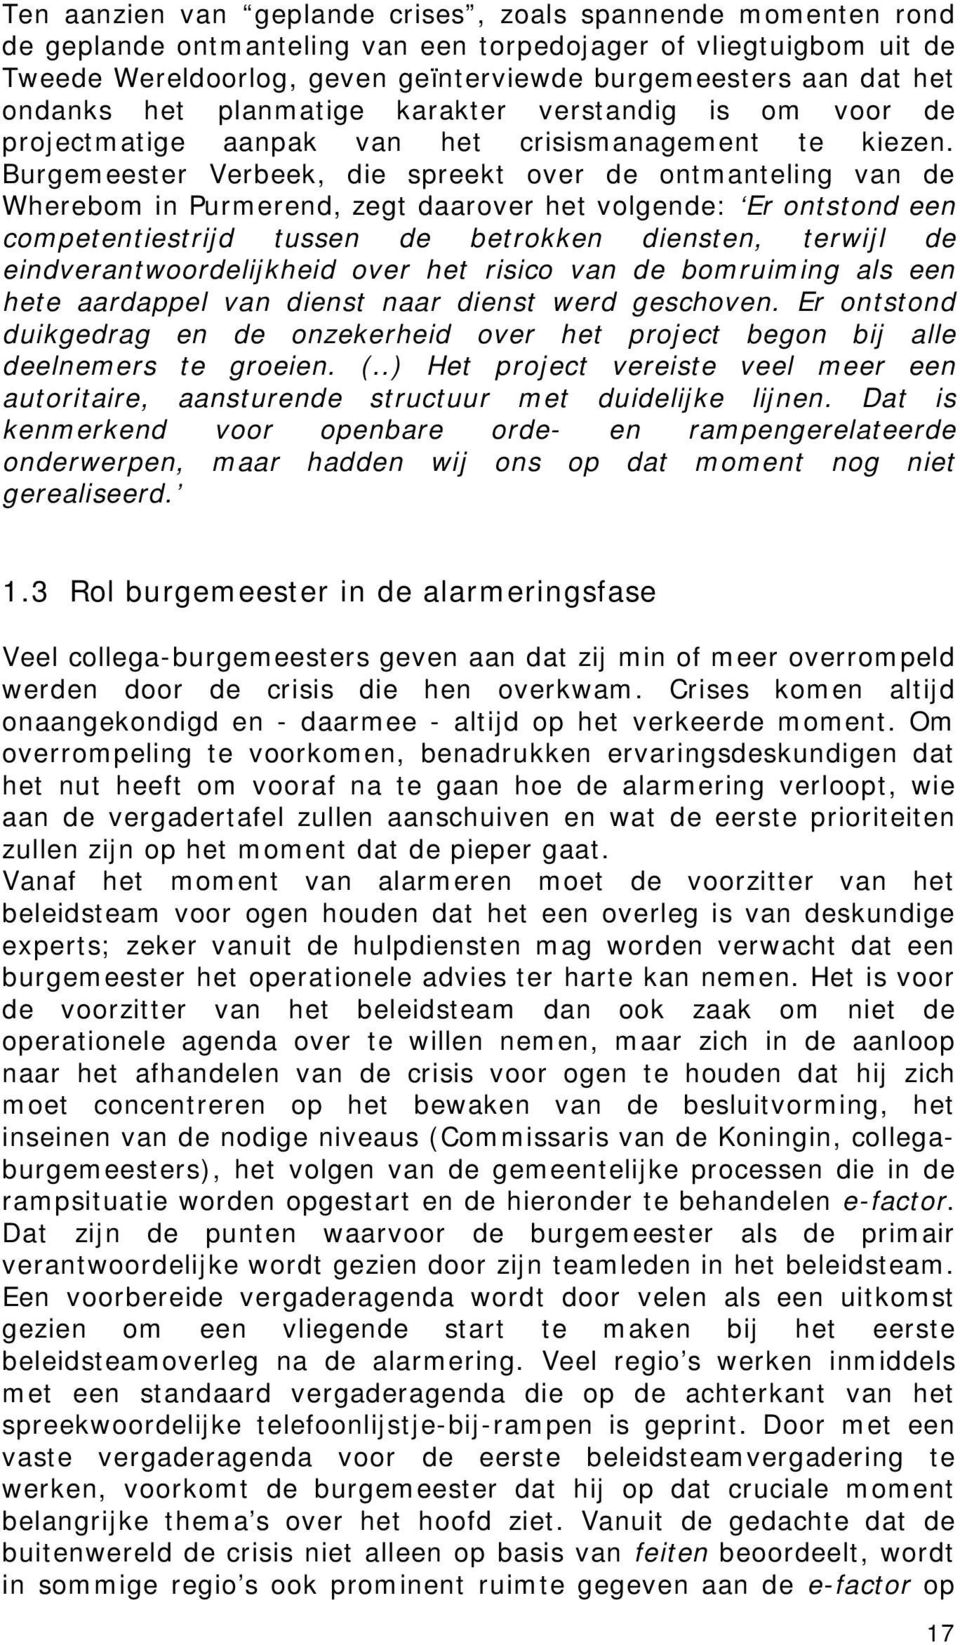 Burgemeester Verbeek, die spreekt over de ontmanteling van de Wherebom in Purmerend, zegt daarover het volgende: Er ontstond een competentiestrijd tussen de betrokken diensten, terwijl de